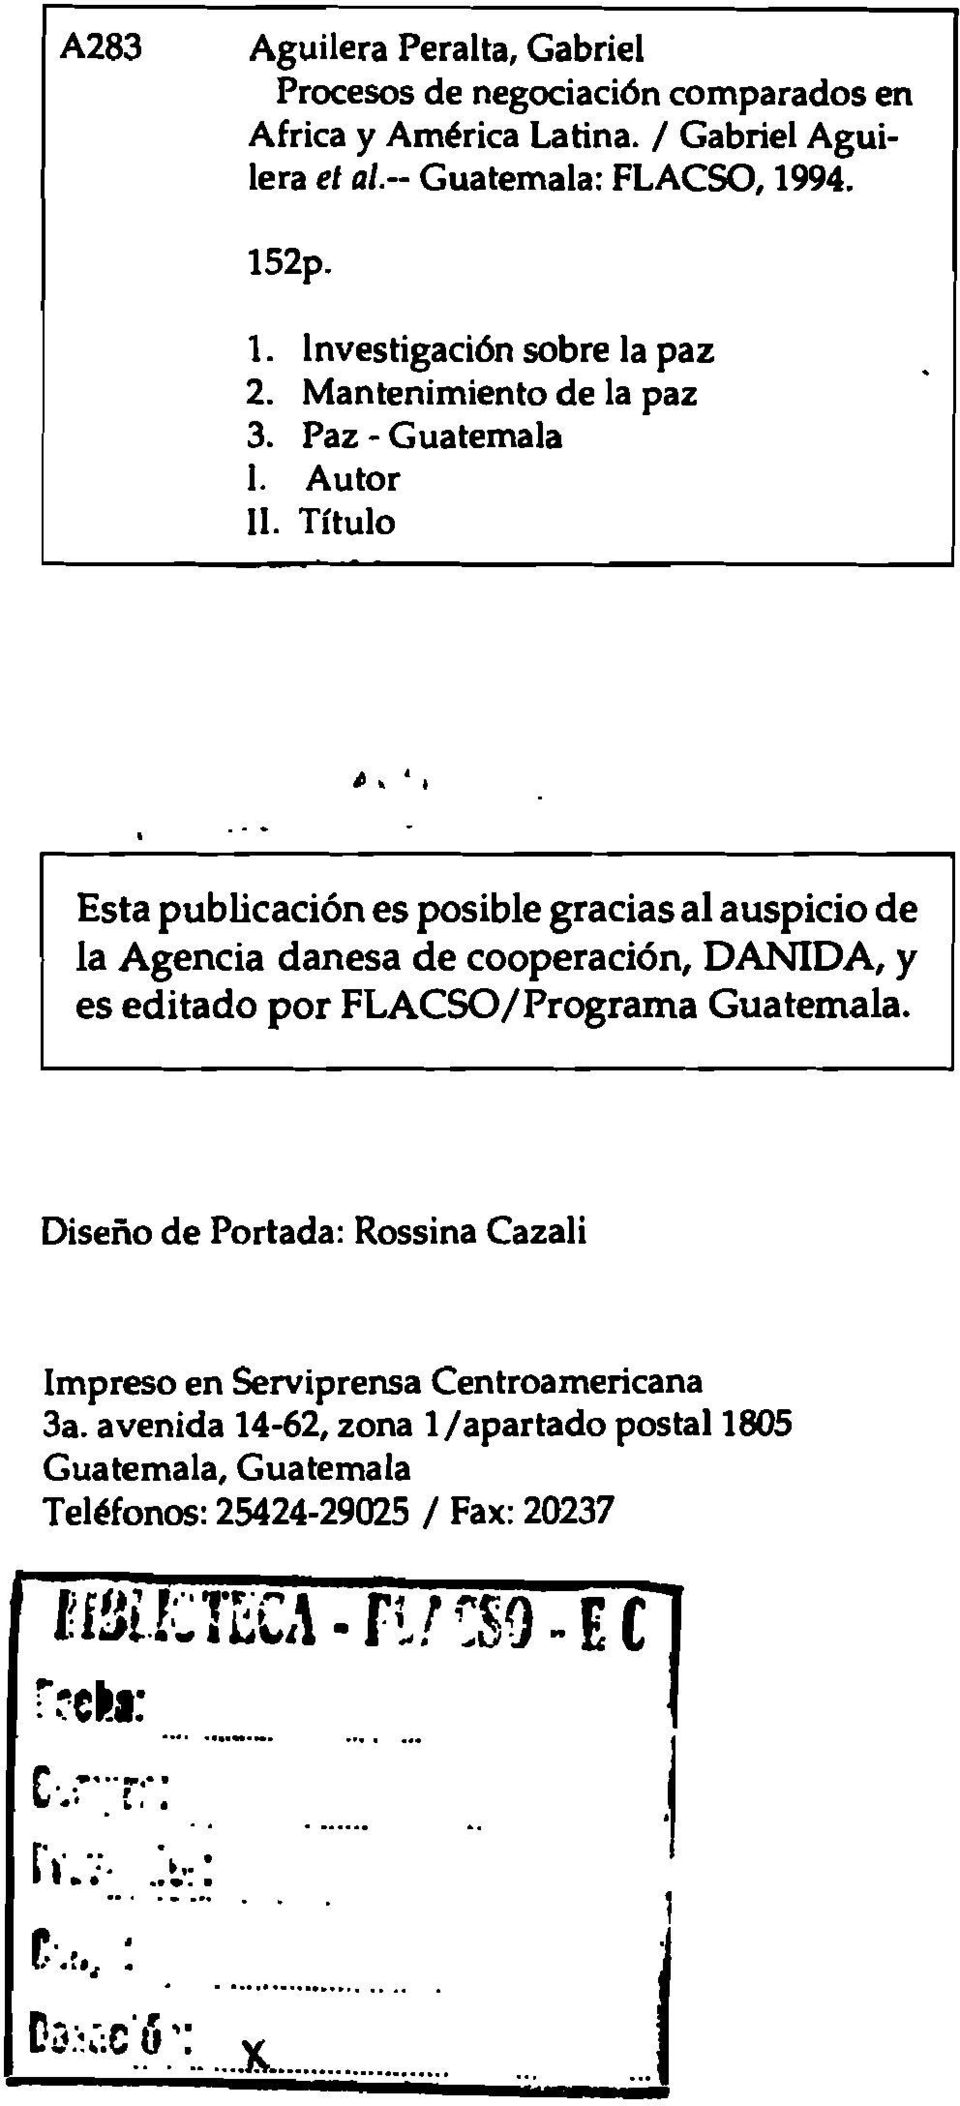 Título Esta publicación es posible gracias al auspicio de la Agencia danesa de cooperación, DANIDA, y es editado por FLACSO/Programa Guatemala.